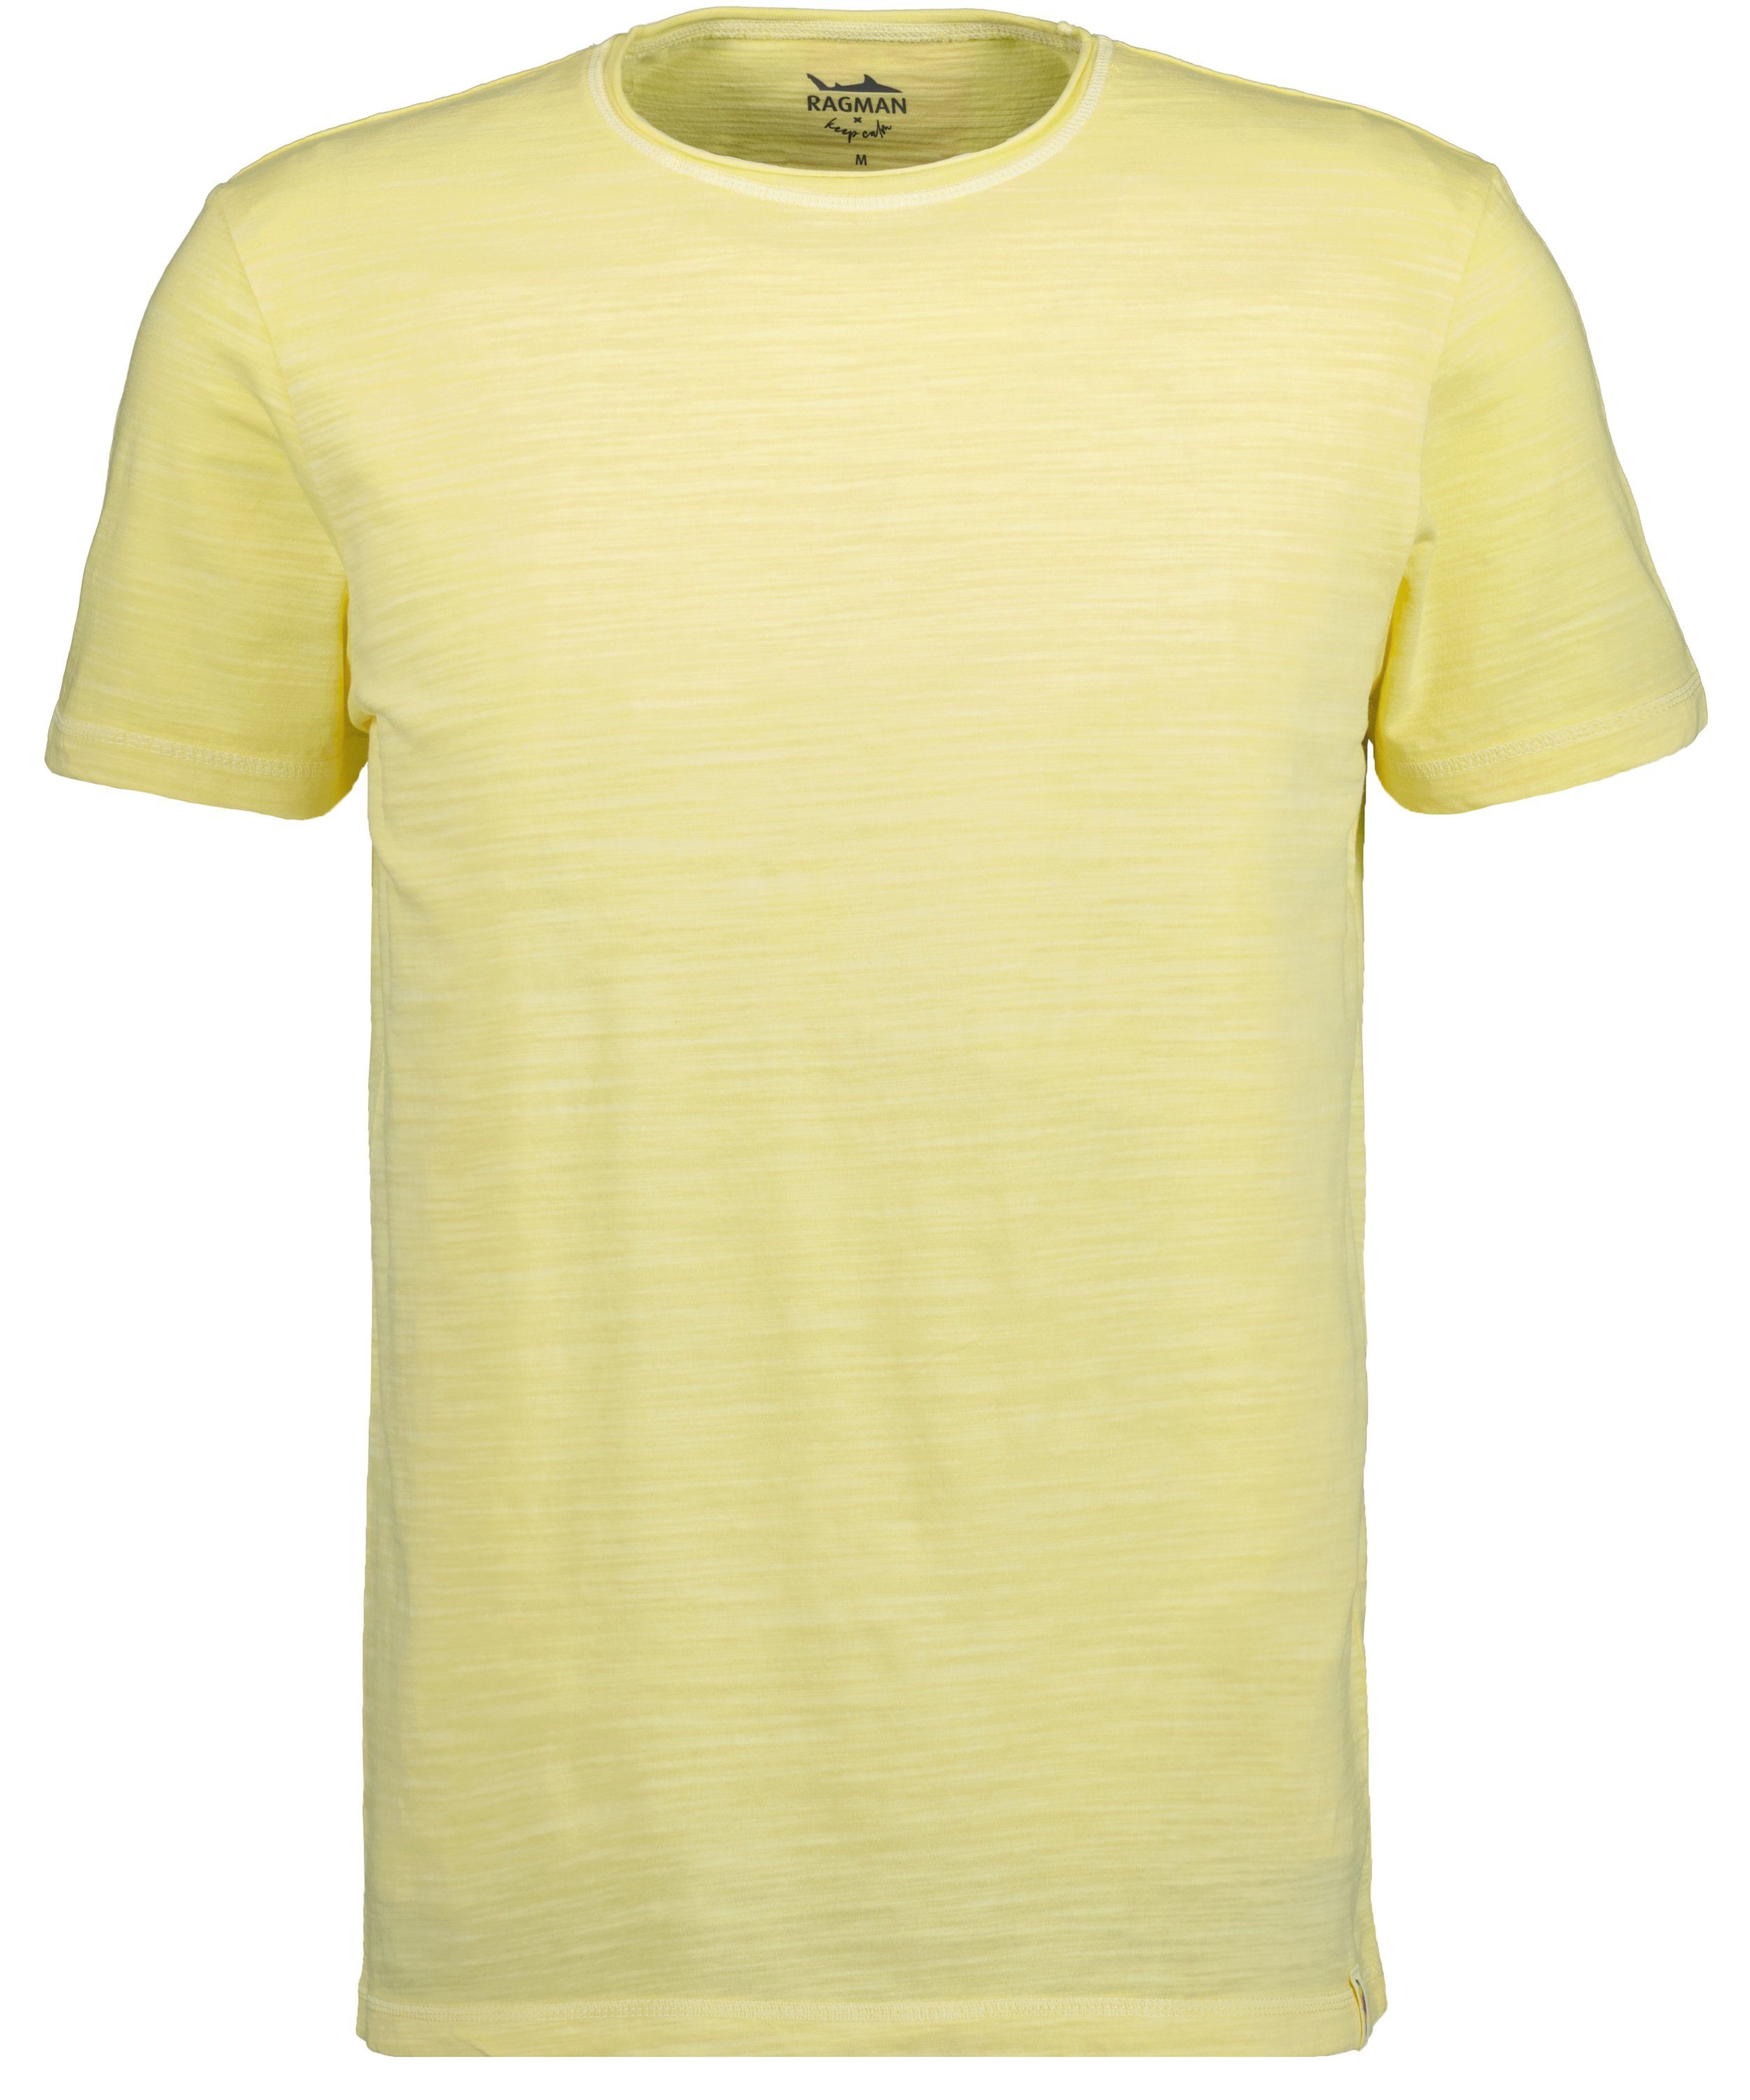 RAGMAN T-Shirt Zitrone-532